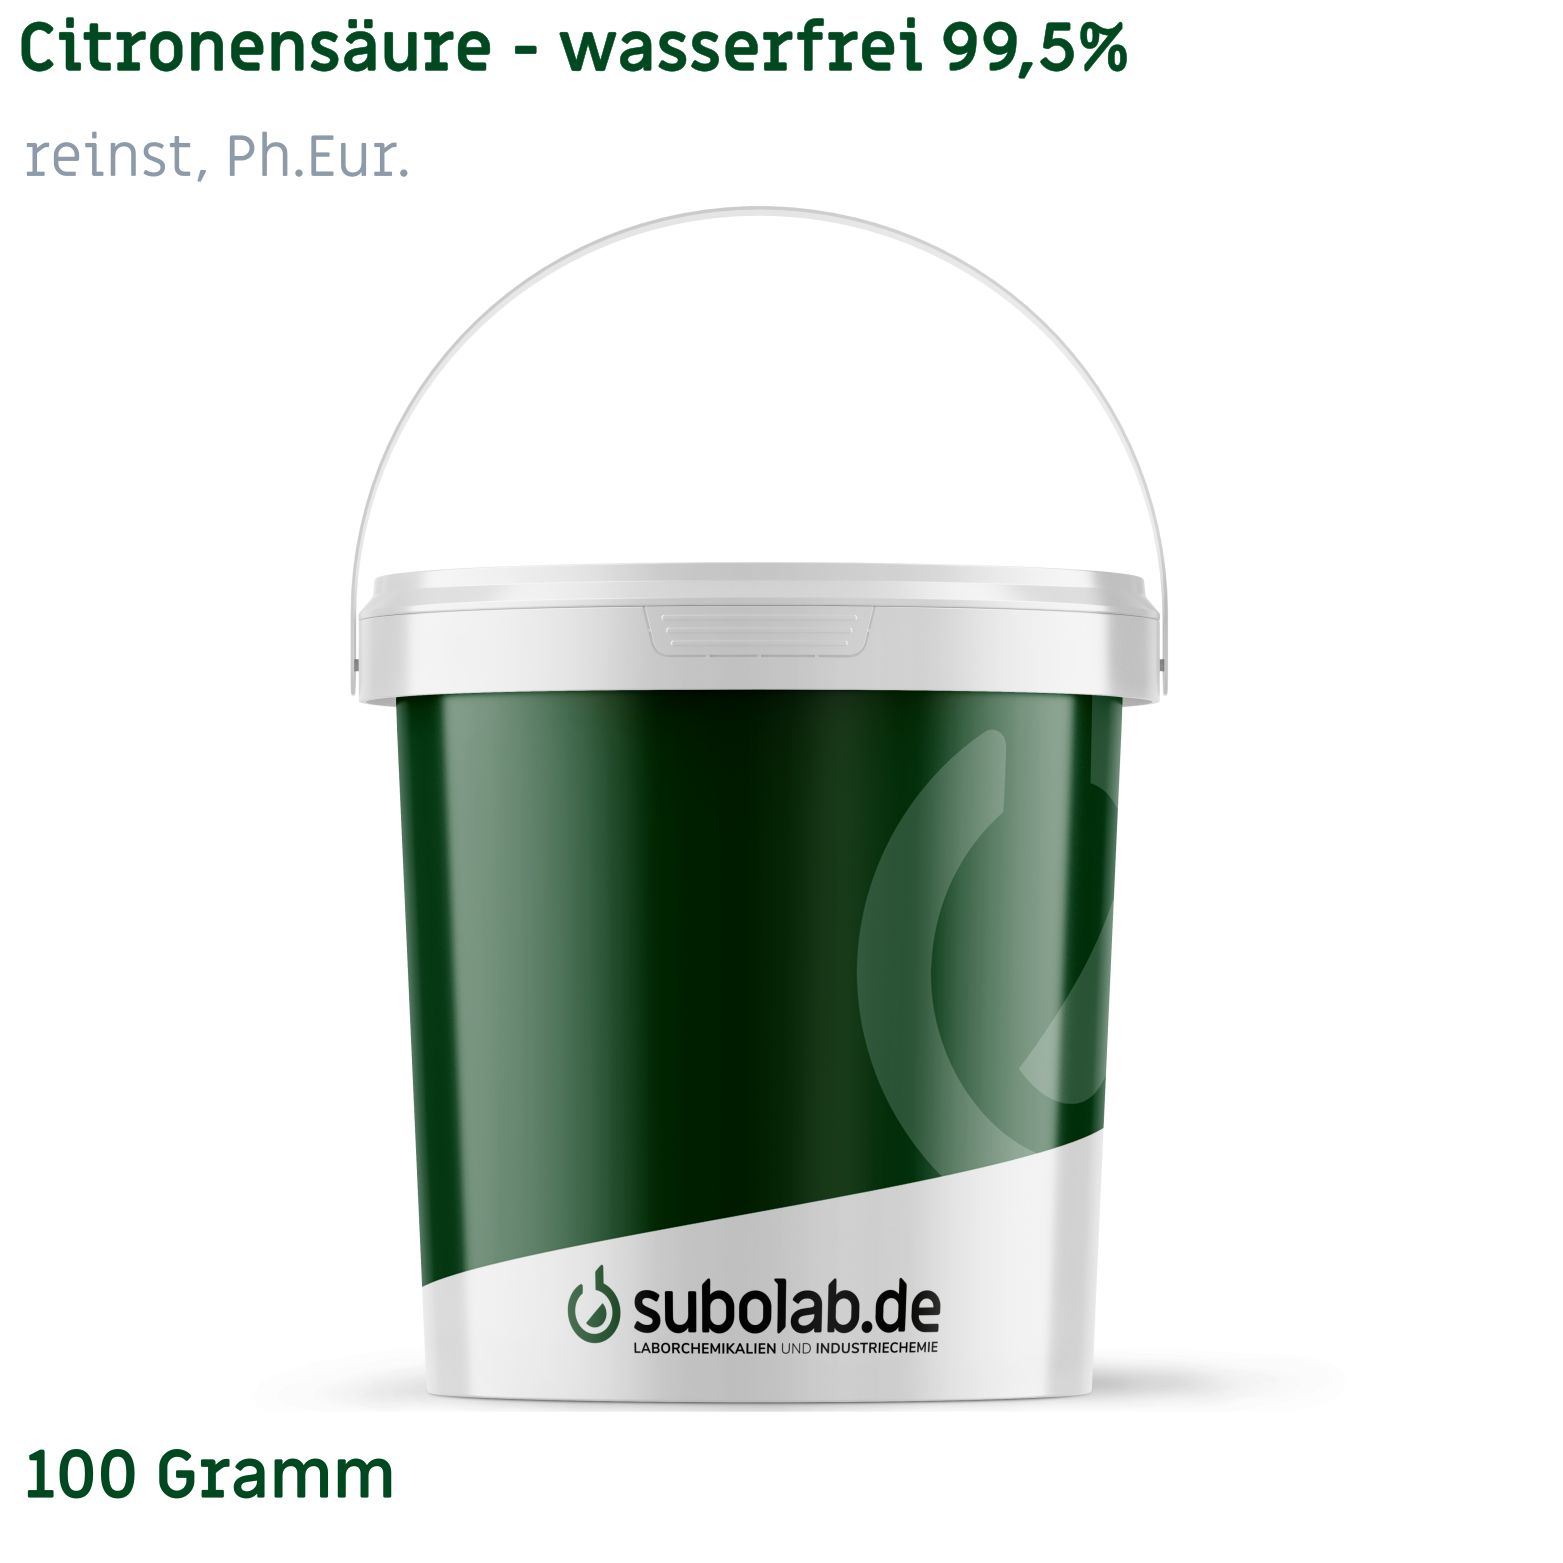 Bild von Citronensäure - wasserfrei 99,5% reinst, Ph.Eur. (100 Gramm)